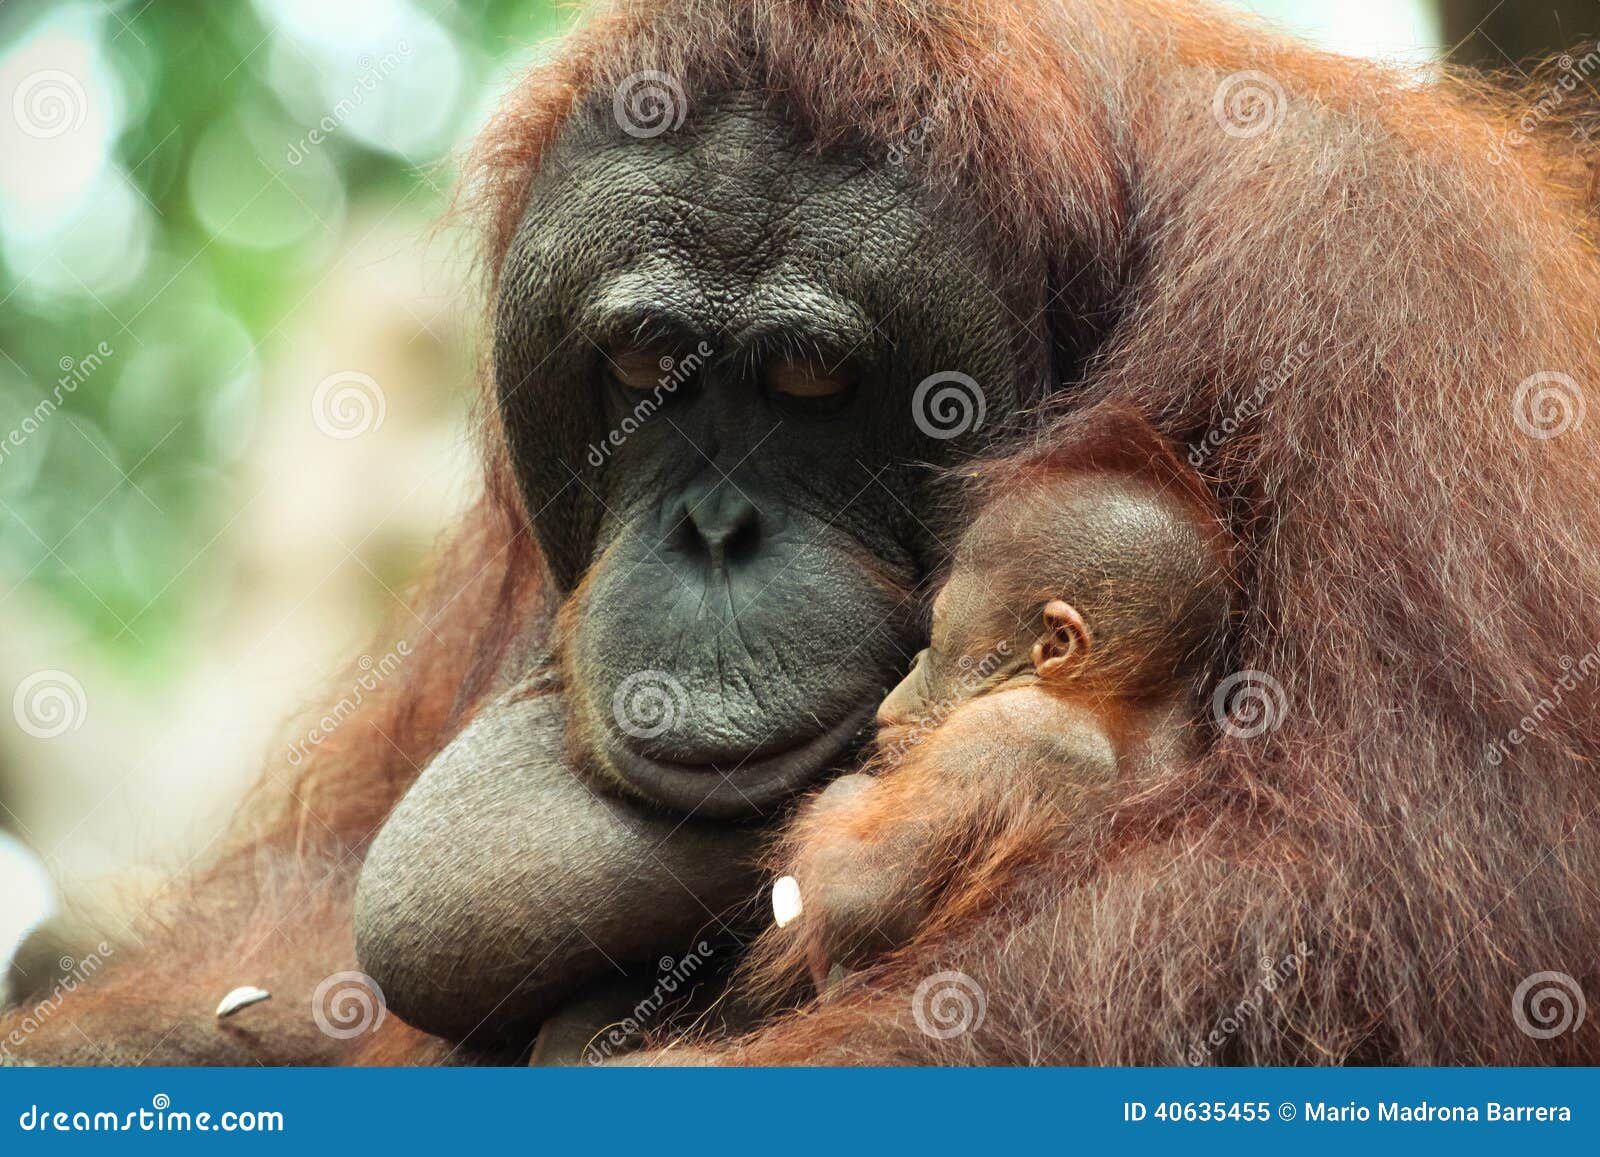  Sleeping Baby Orangutan  stock image Image of sleep 